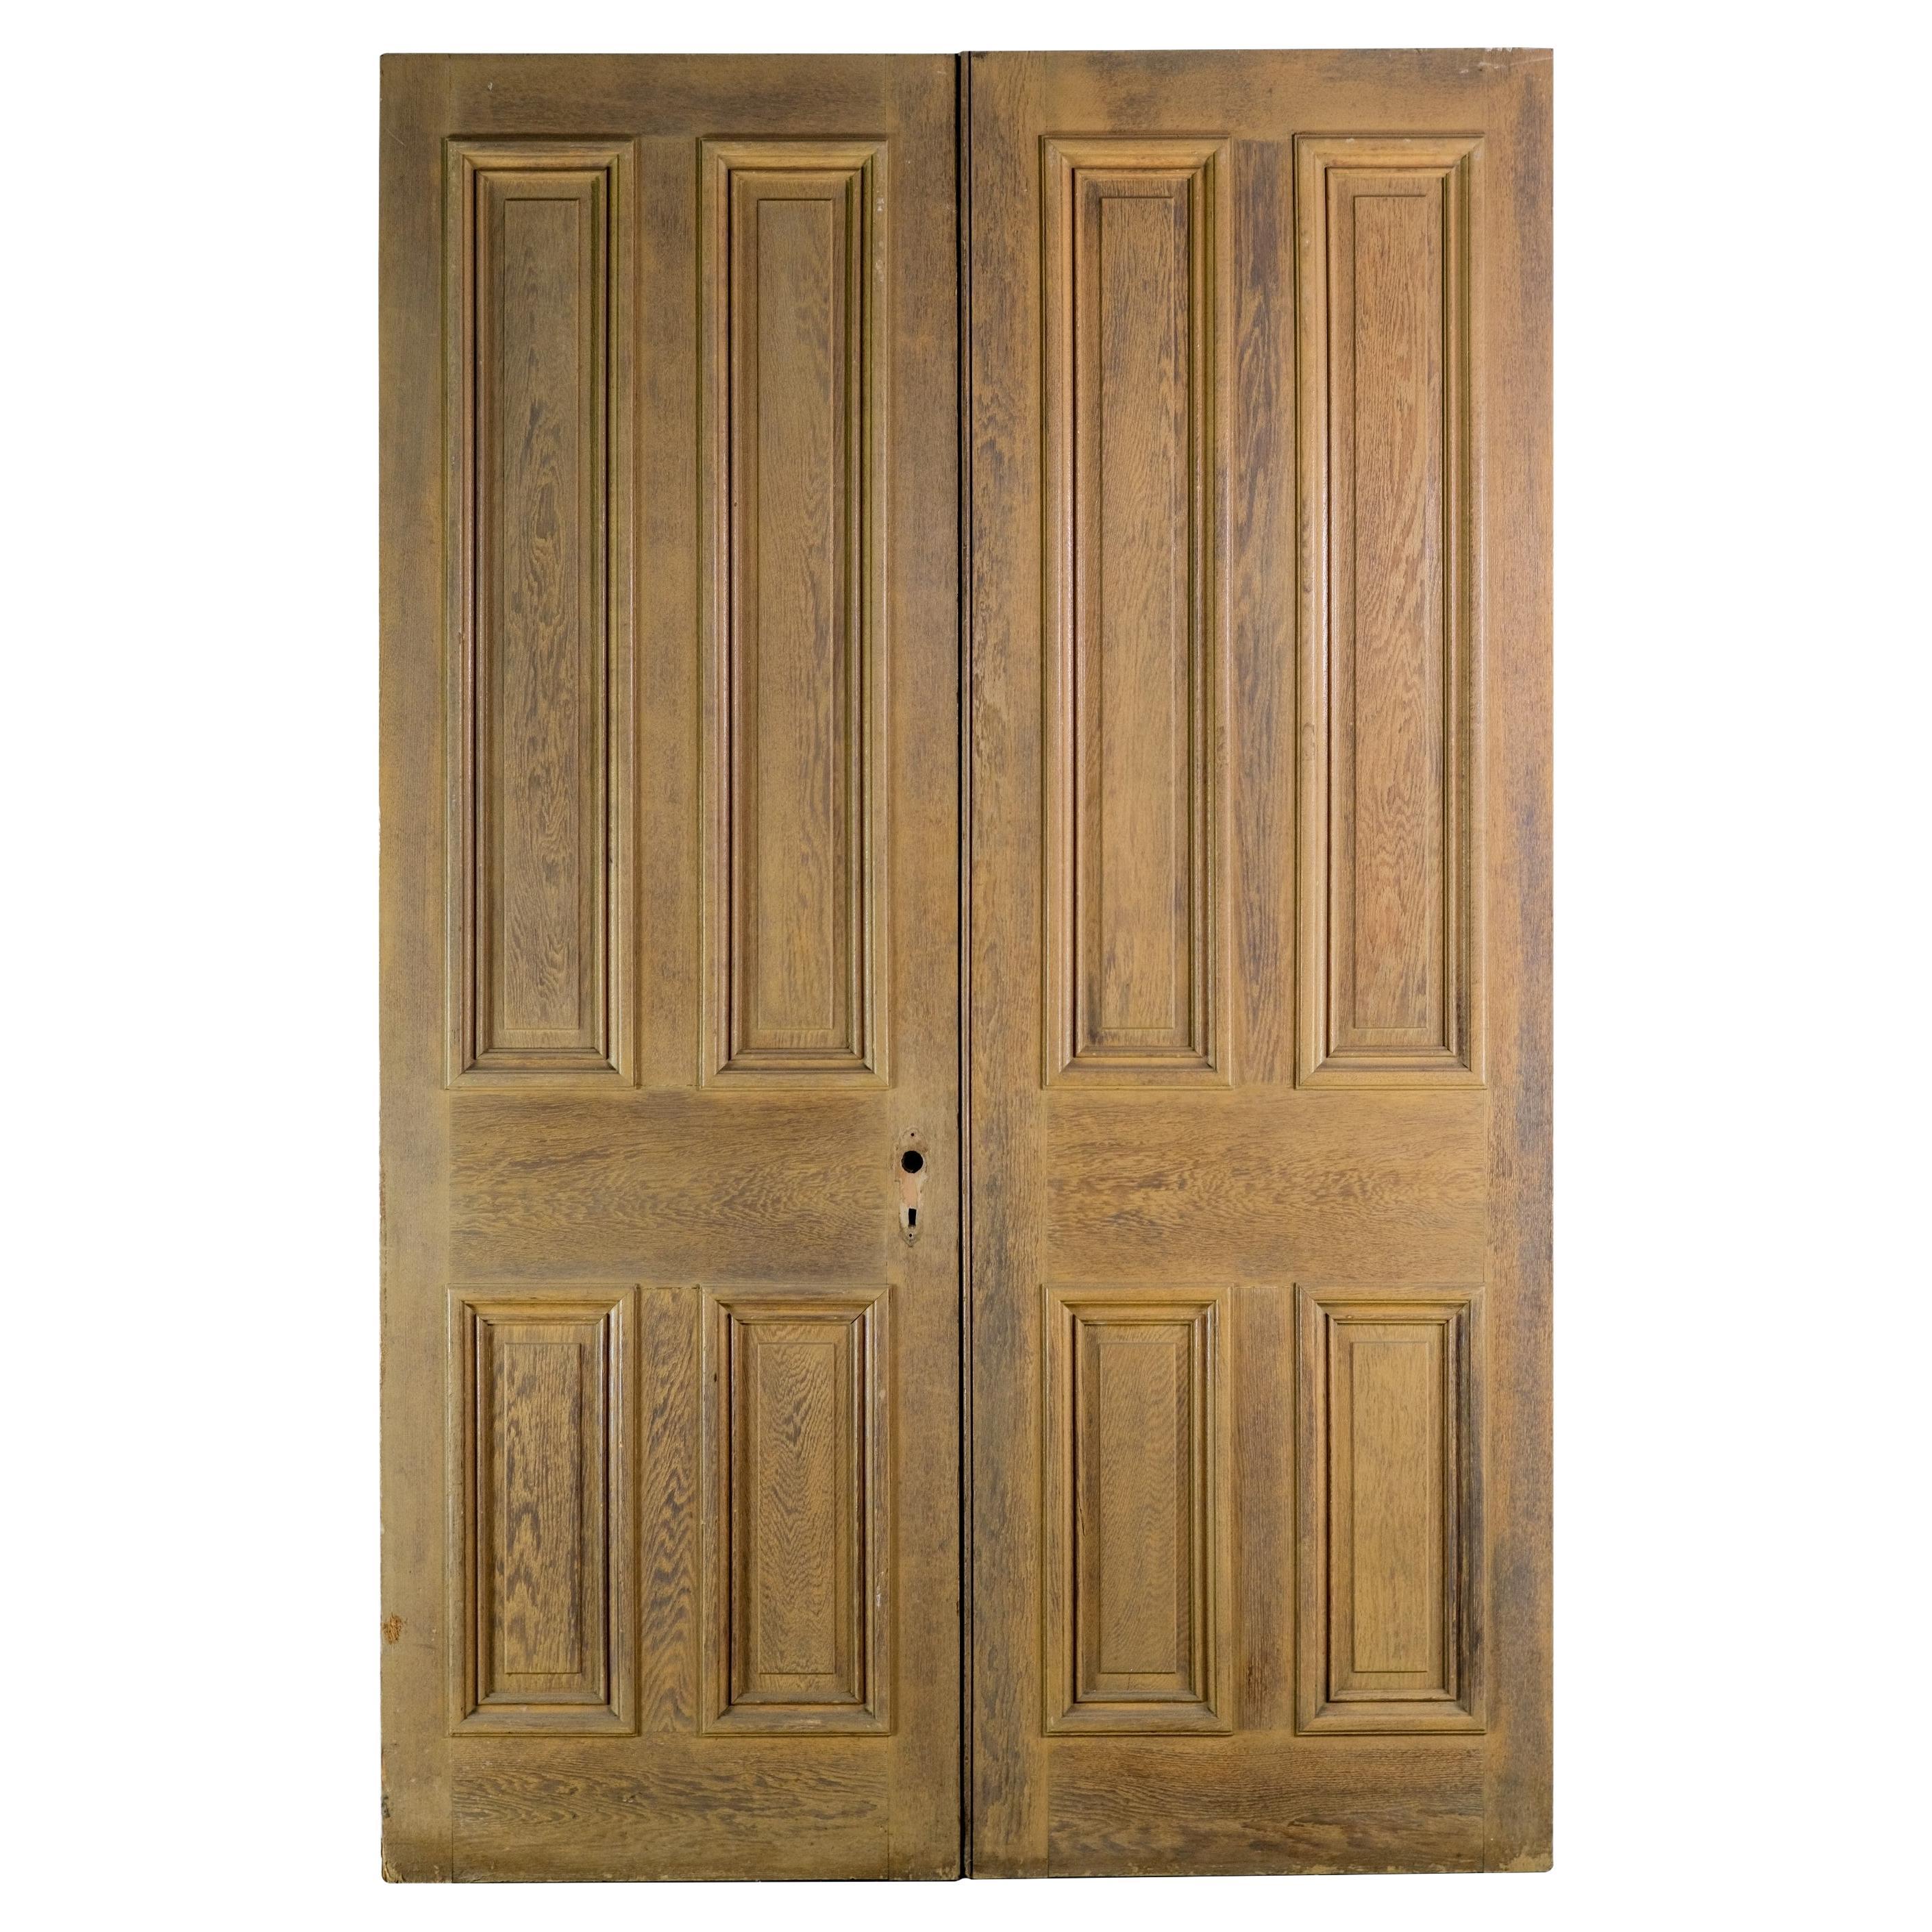 Solid Oak 4 Pane Passage Double Doors 89.5 x 57.5